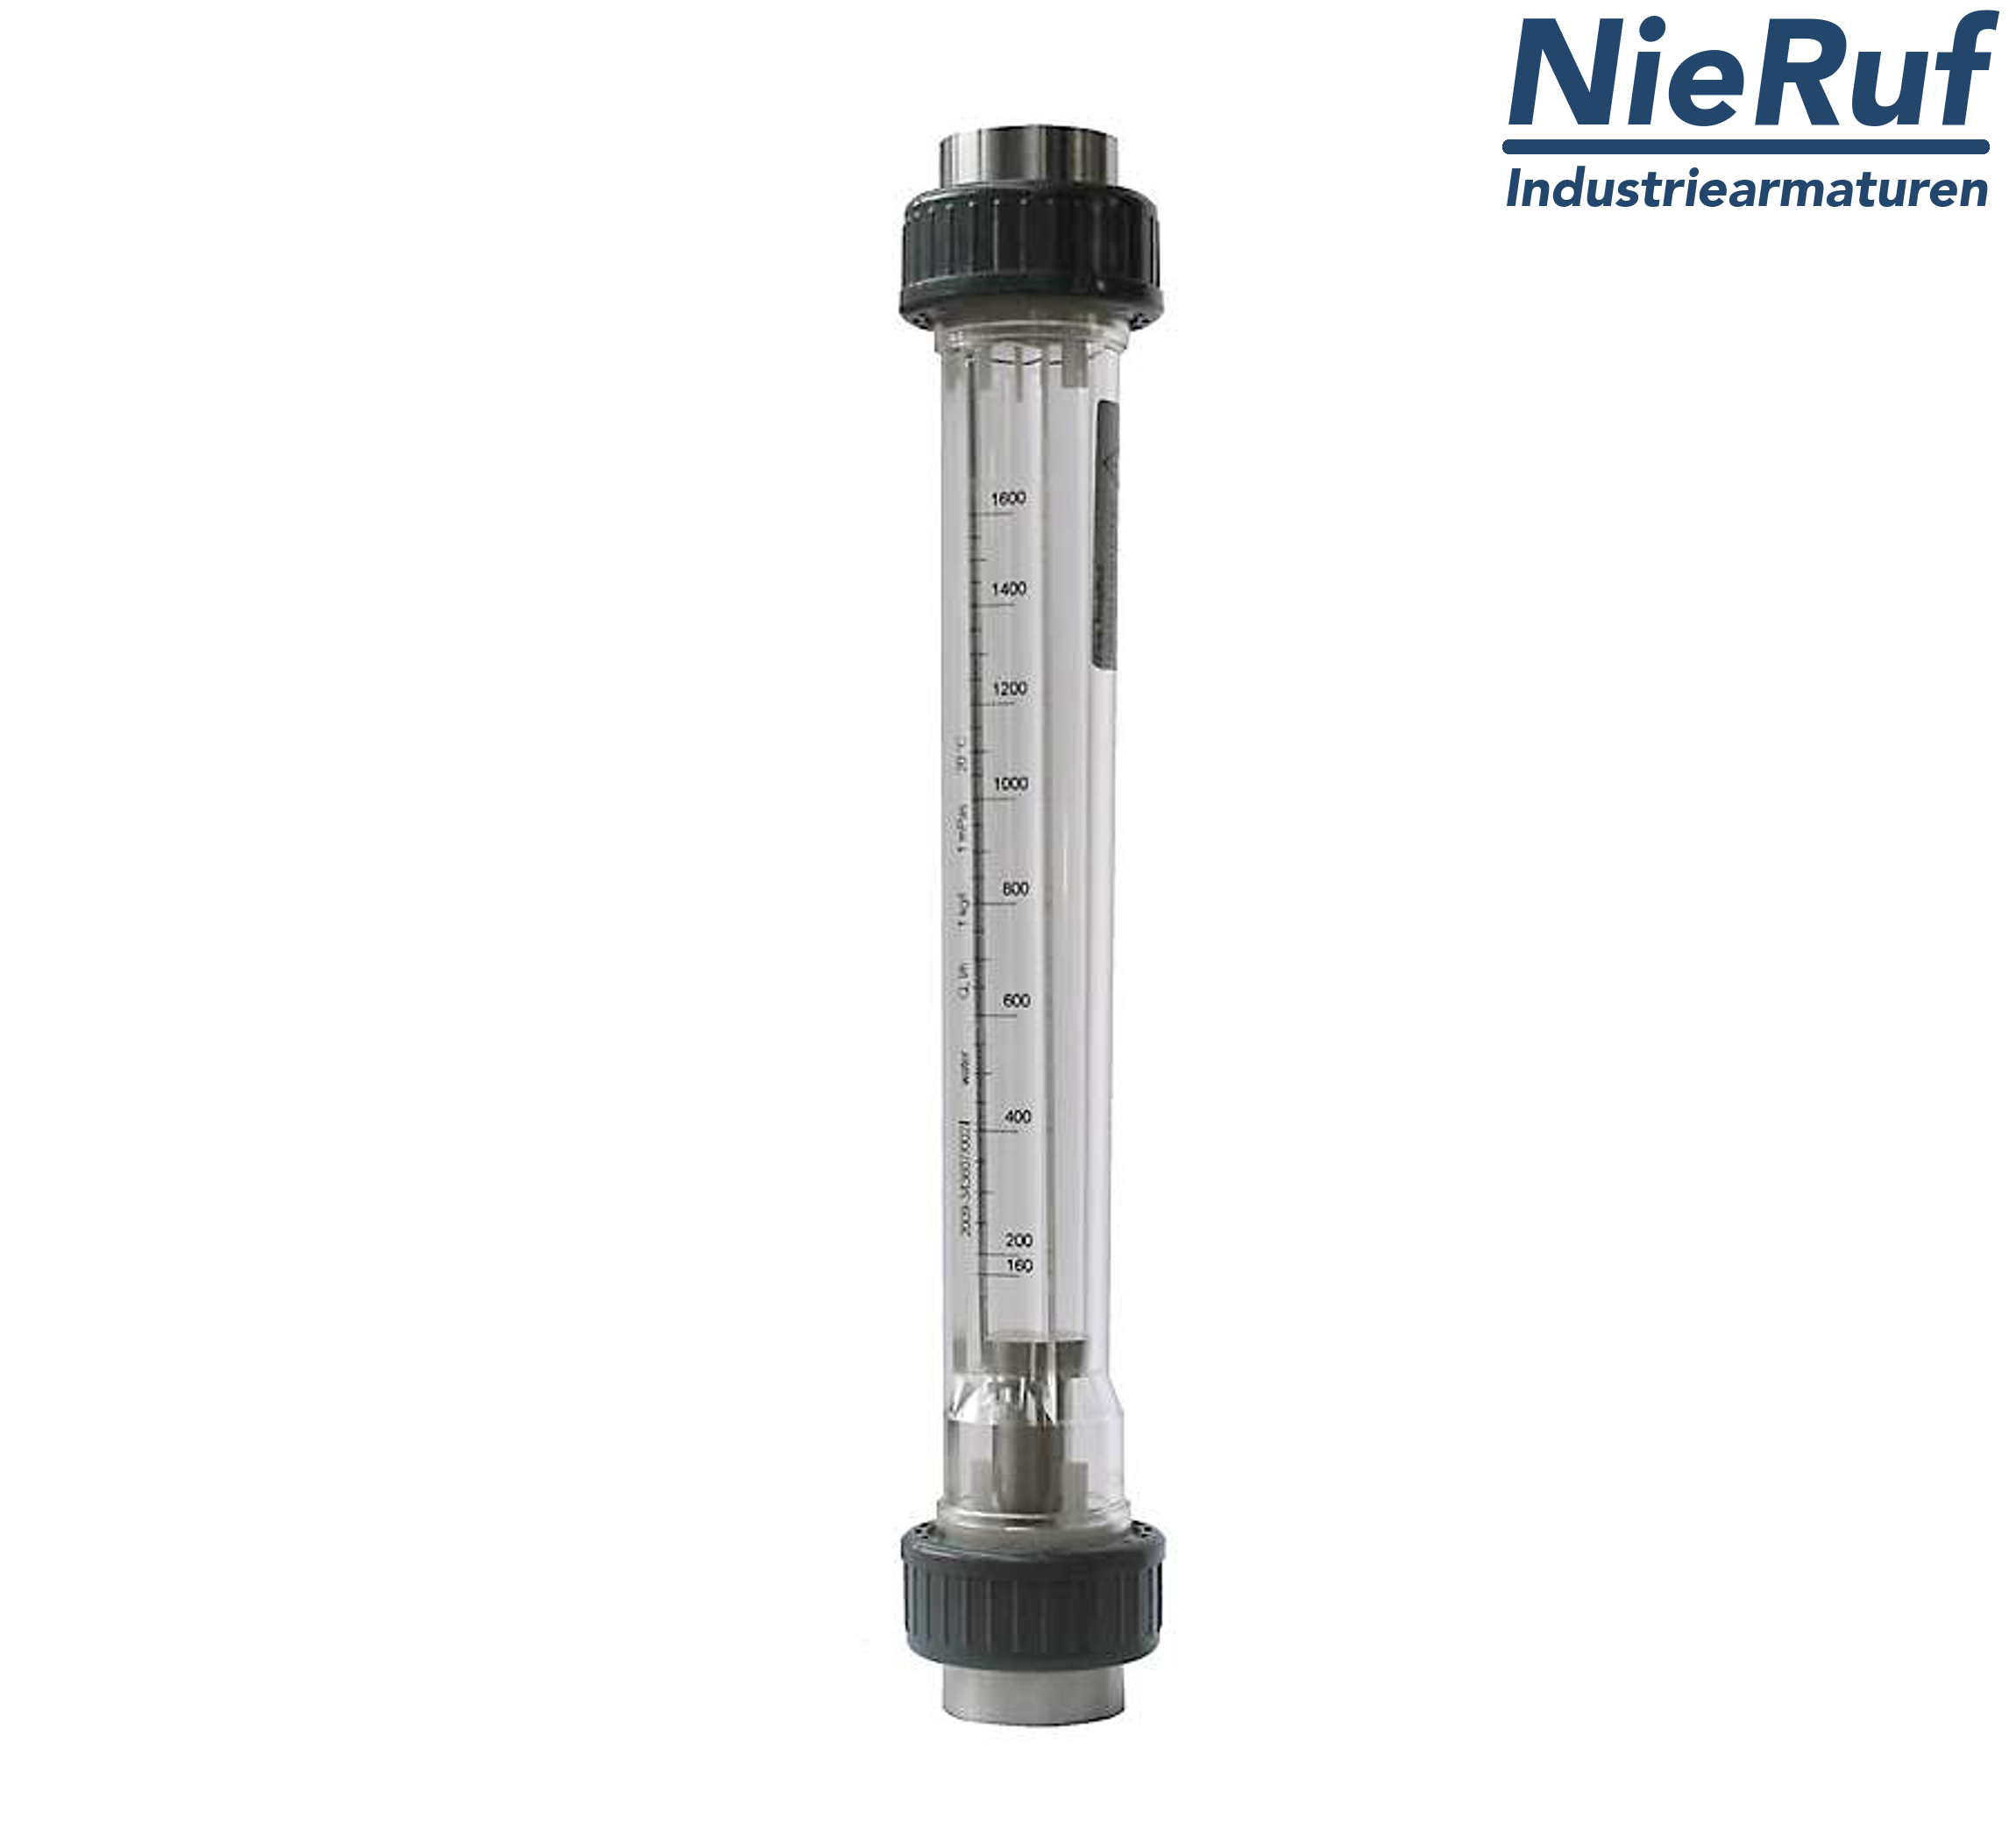 Variable area flowmeter 1 1/4" Inch NPT 16000.0 - 160000 l/h air NBR